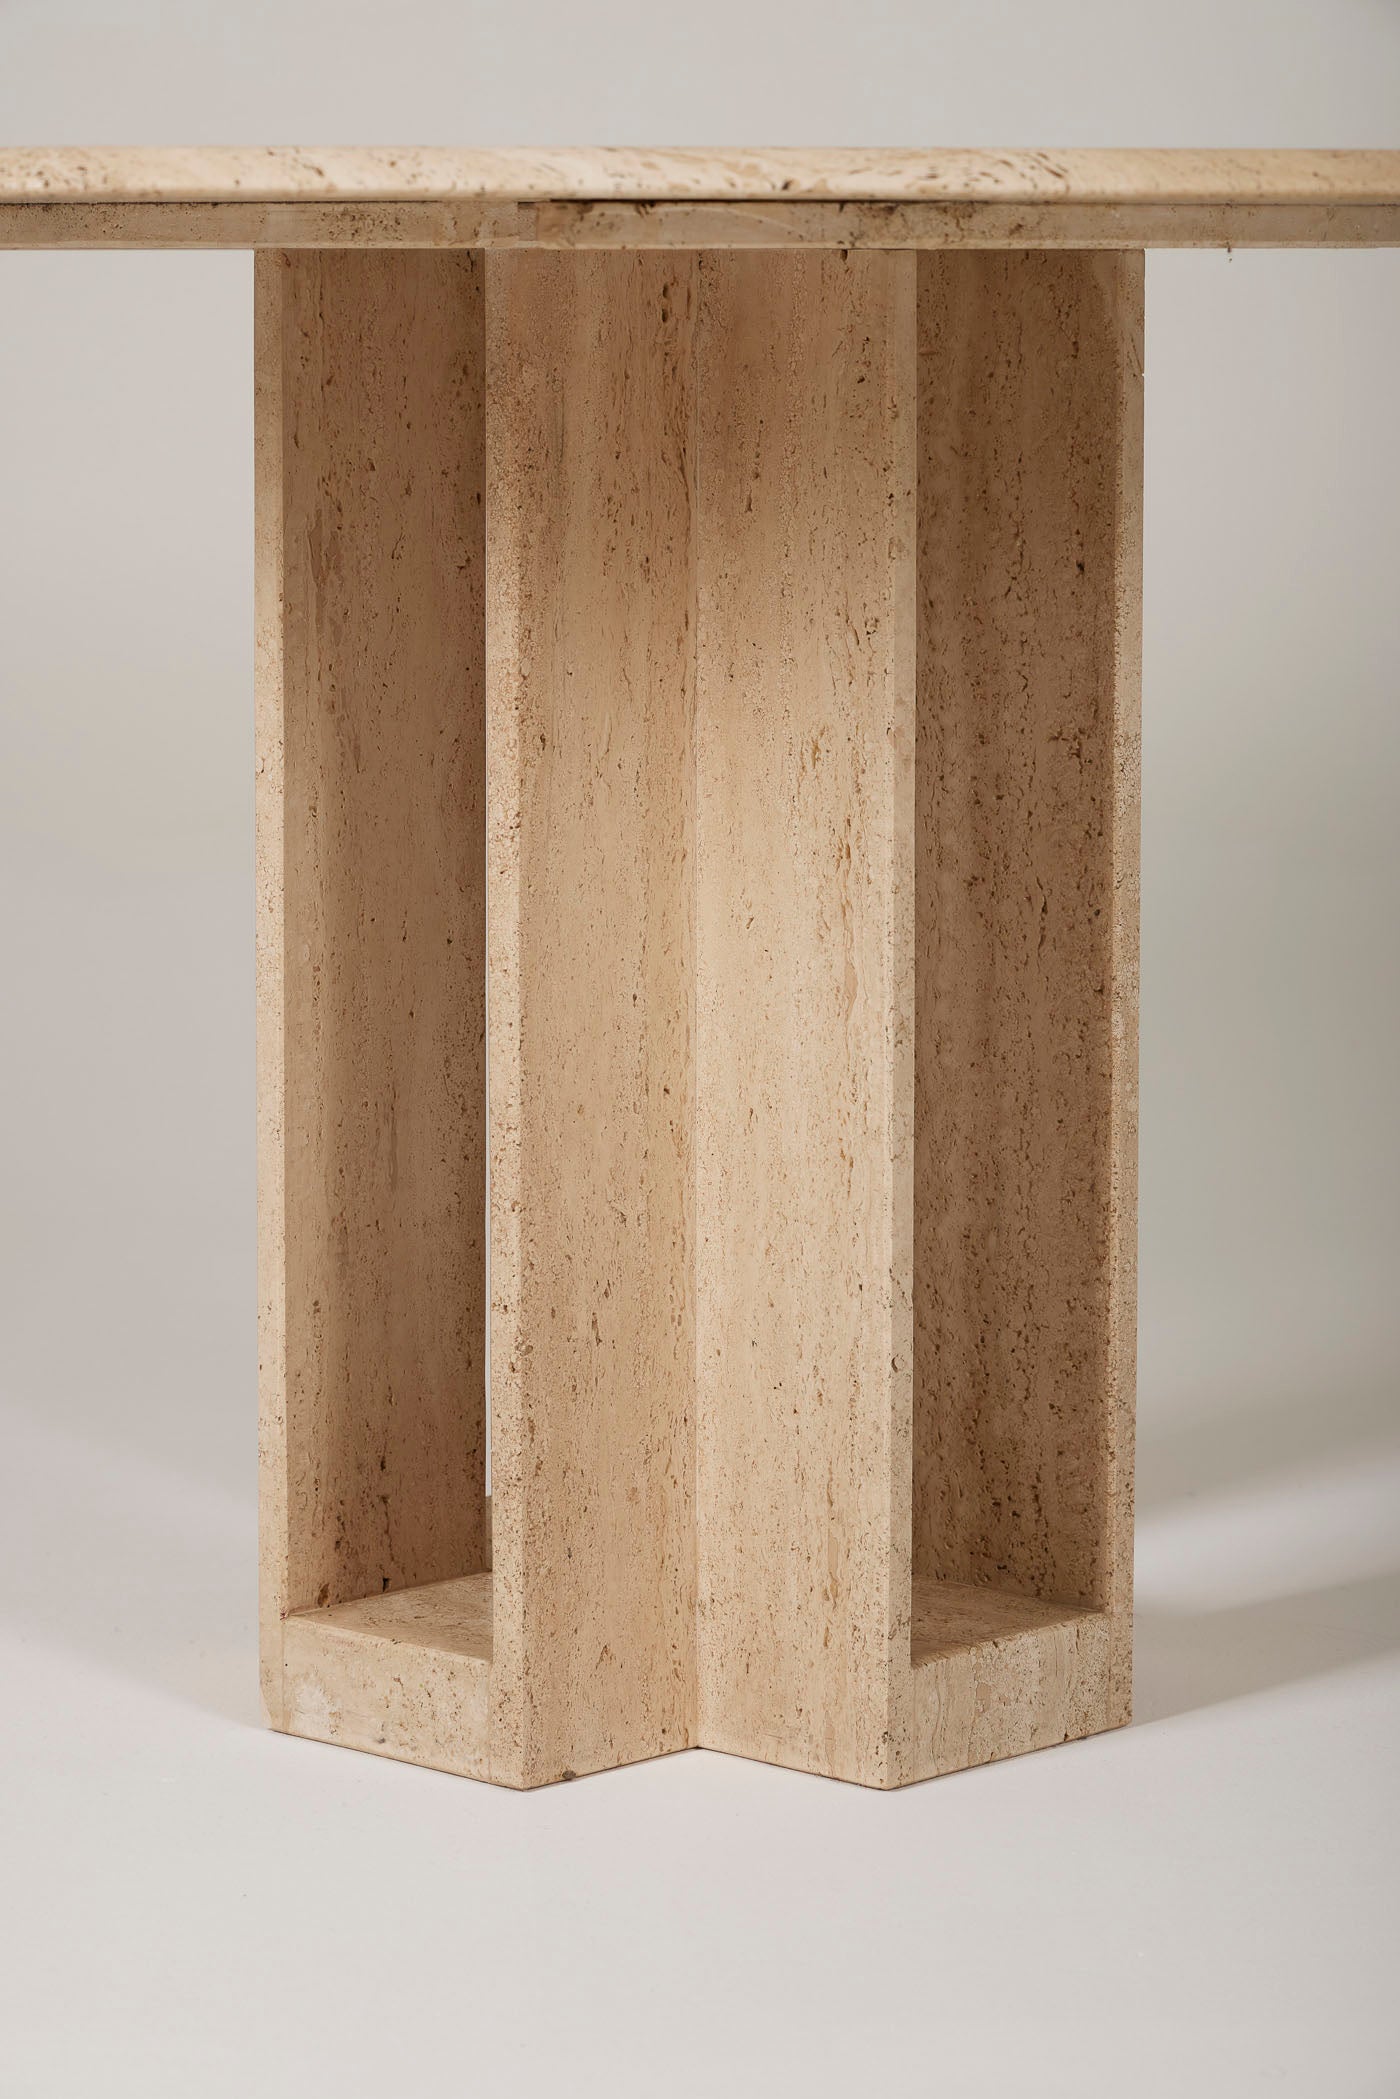 Table à manger en travertin des années 1970. Le plateau octogonale repose sur son piedestal en forme de croix. Le travertin est une roche naturelle calcaire sédimentaire qui se marie aussi bien avec du bois, du marbre ou du métal. Bon état général.